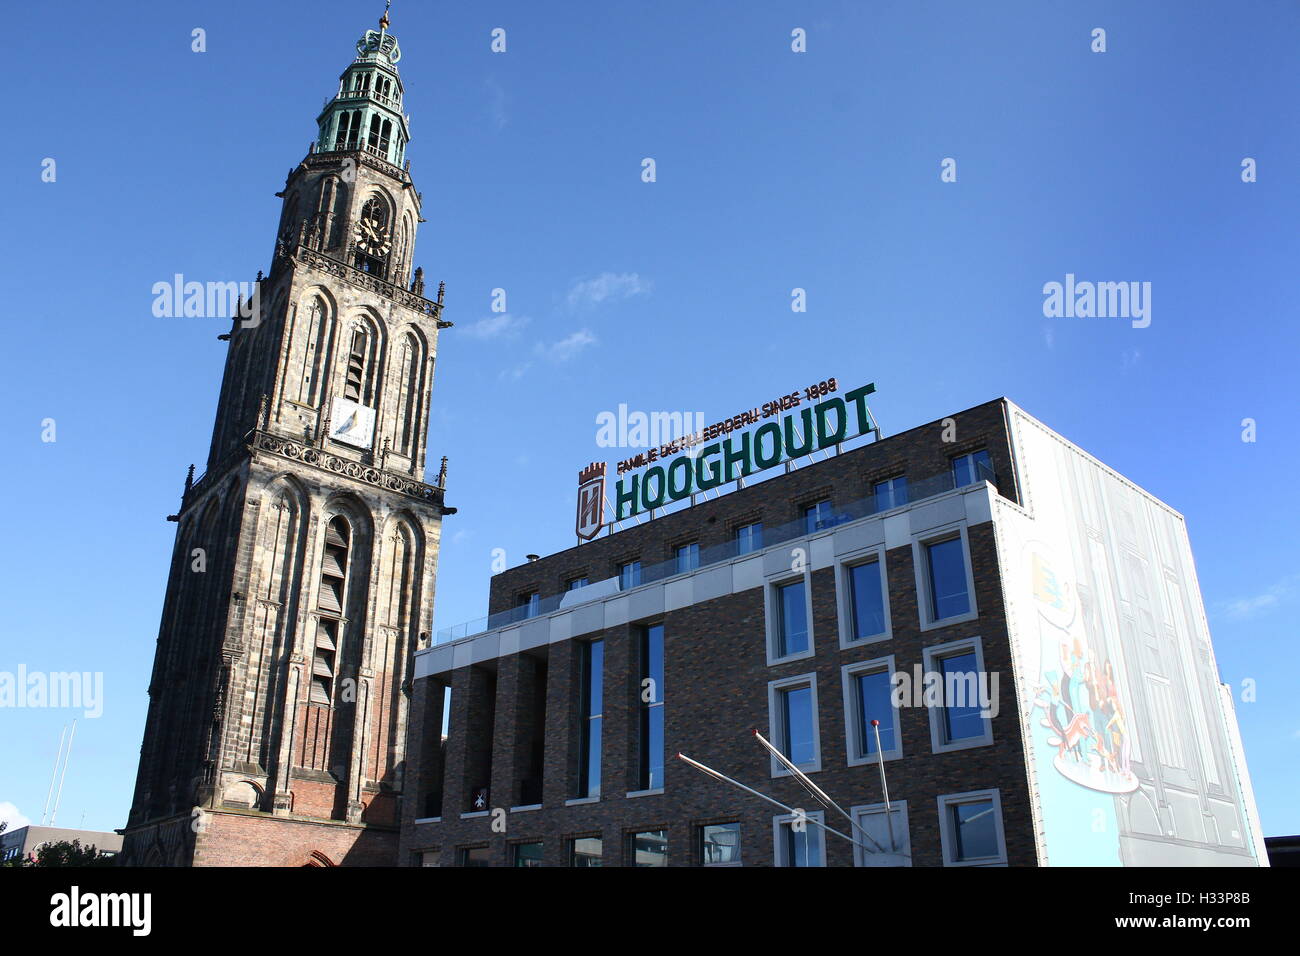 Gesellschaft bauen Mutua Fides, Student Association Vindicat erfand Polit, Grote Markt, Groningen, Niederlande mit Martini-Turm (Martinitoren) Stockfoto